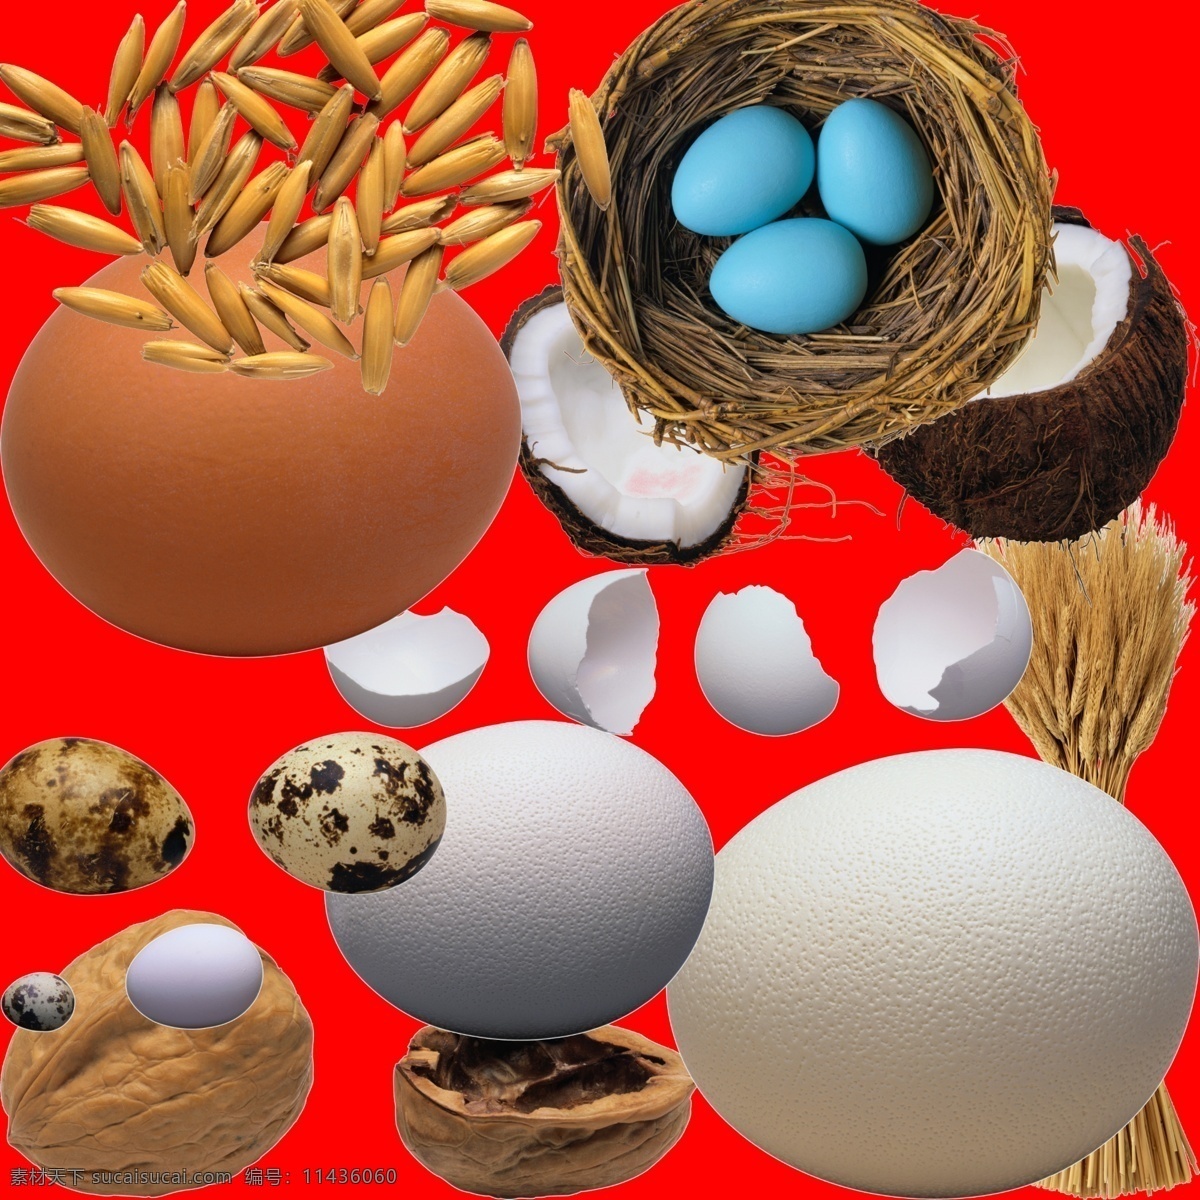 鸟蛋种子 ps素材 大麦 蛋 蛋壳 高精度图片 核桃 鸡蛋 抠好的图 鸟窝 青稞 摄影图 鸟蛋 鹌鹑蛋 鸽子蛋 小麦 一窝蛋 椰子 种子 psd源文件